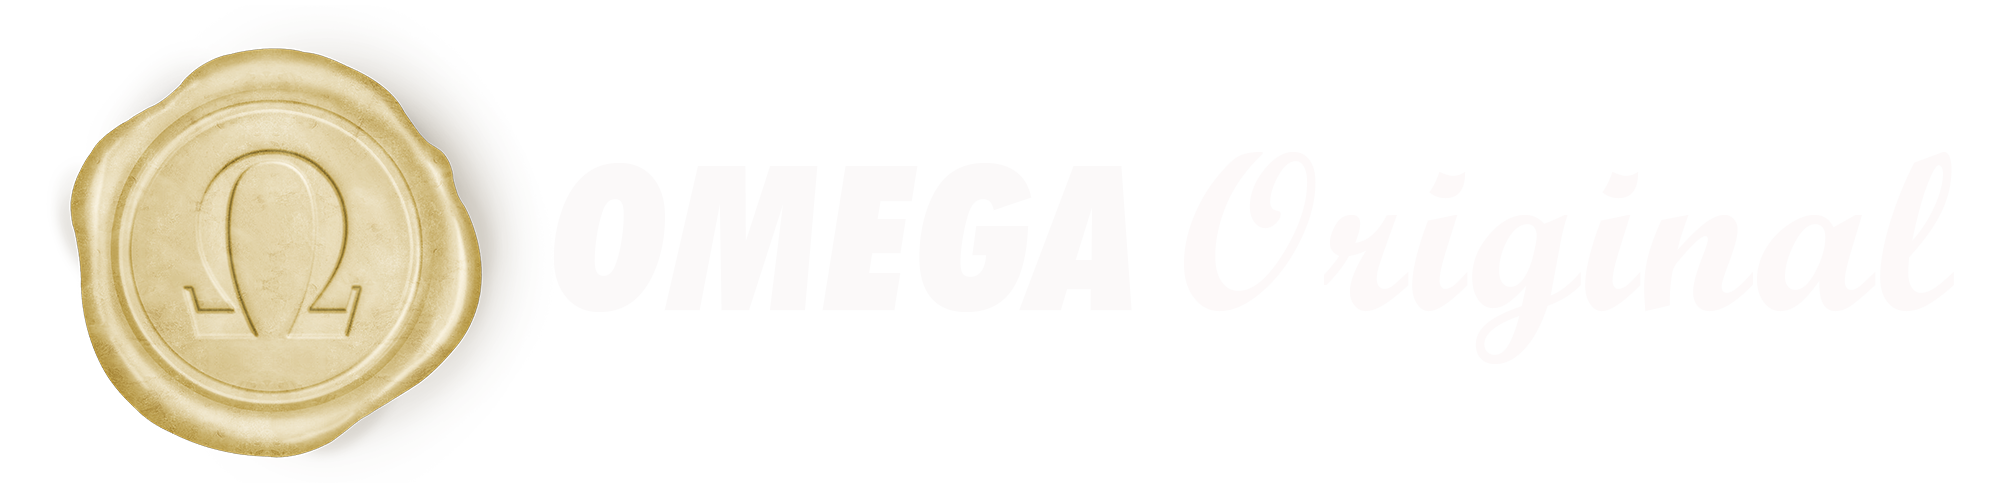 Omega Original